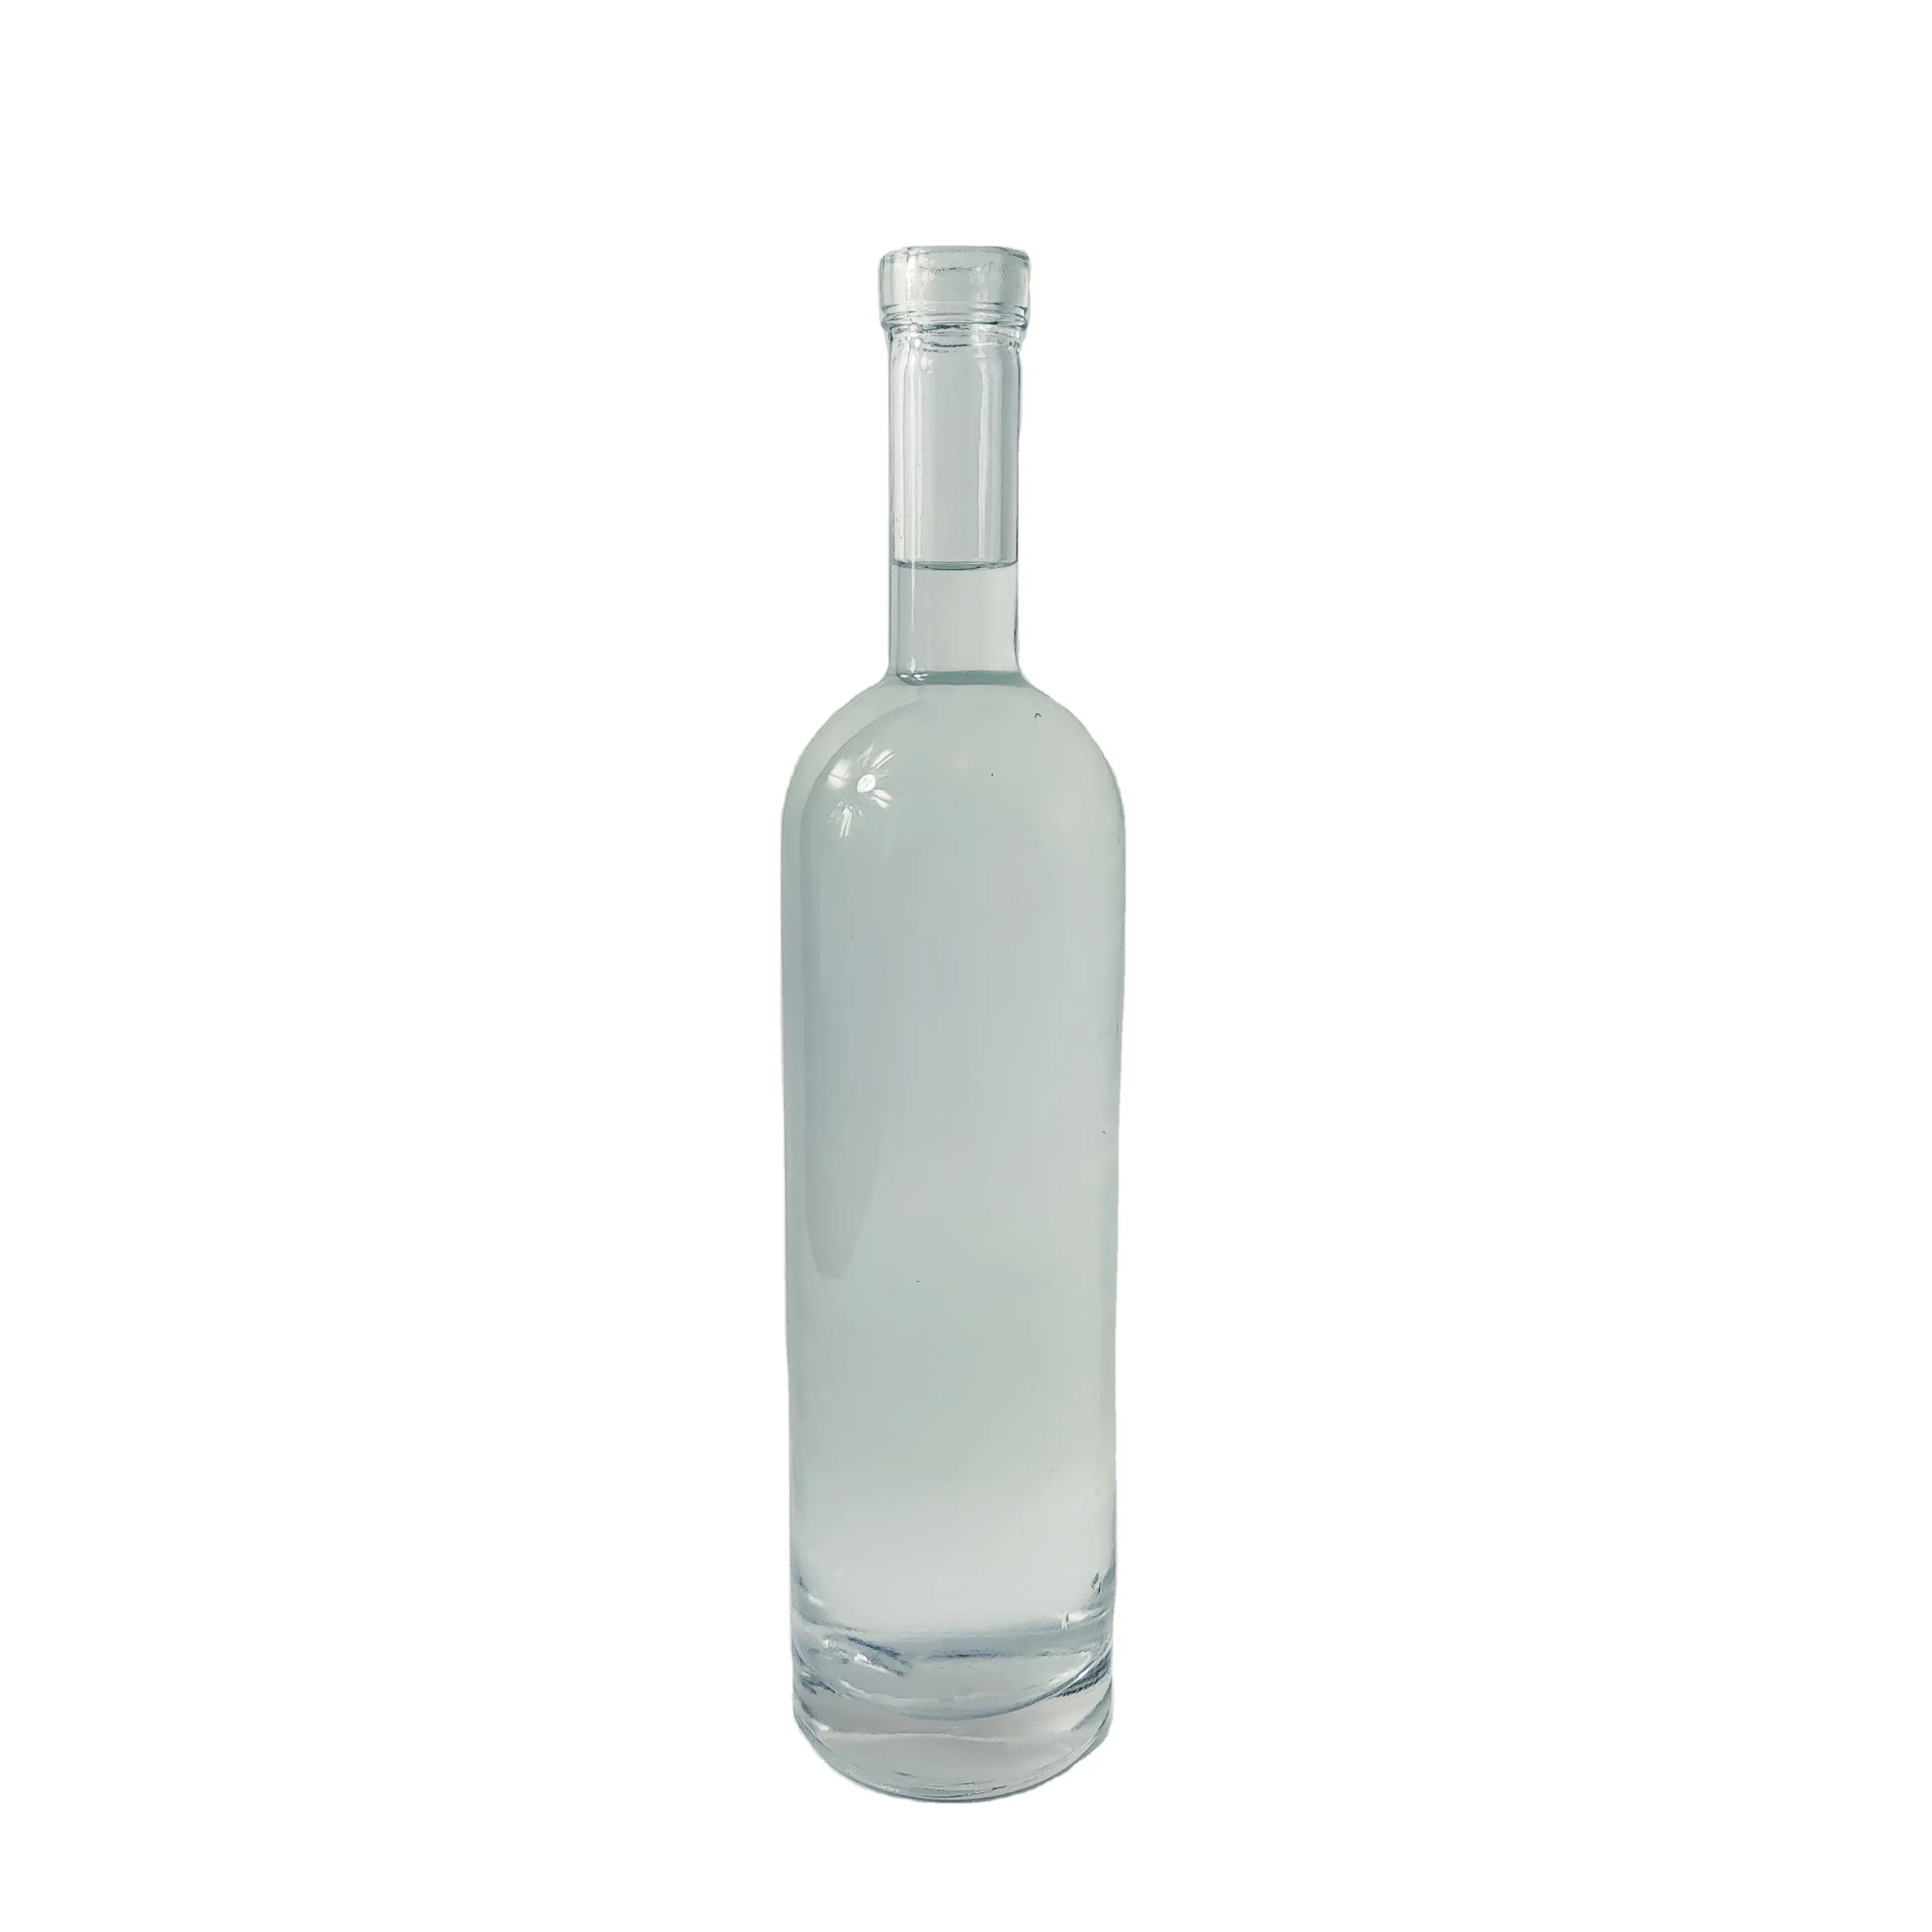 High-quality Long Neck 500ml 700ml Glass Wine Bottles Glass Spirit Bottles At Wholesale